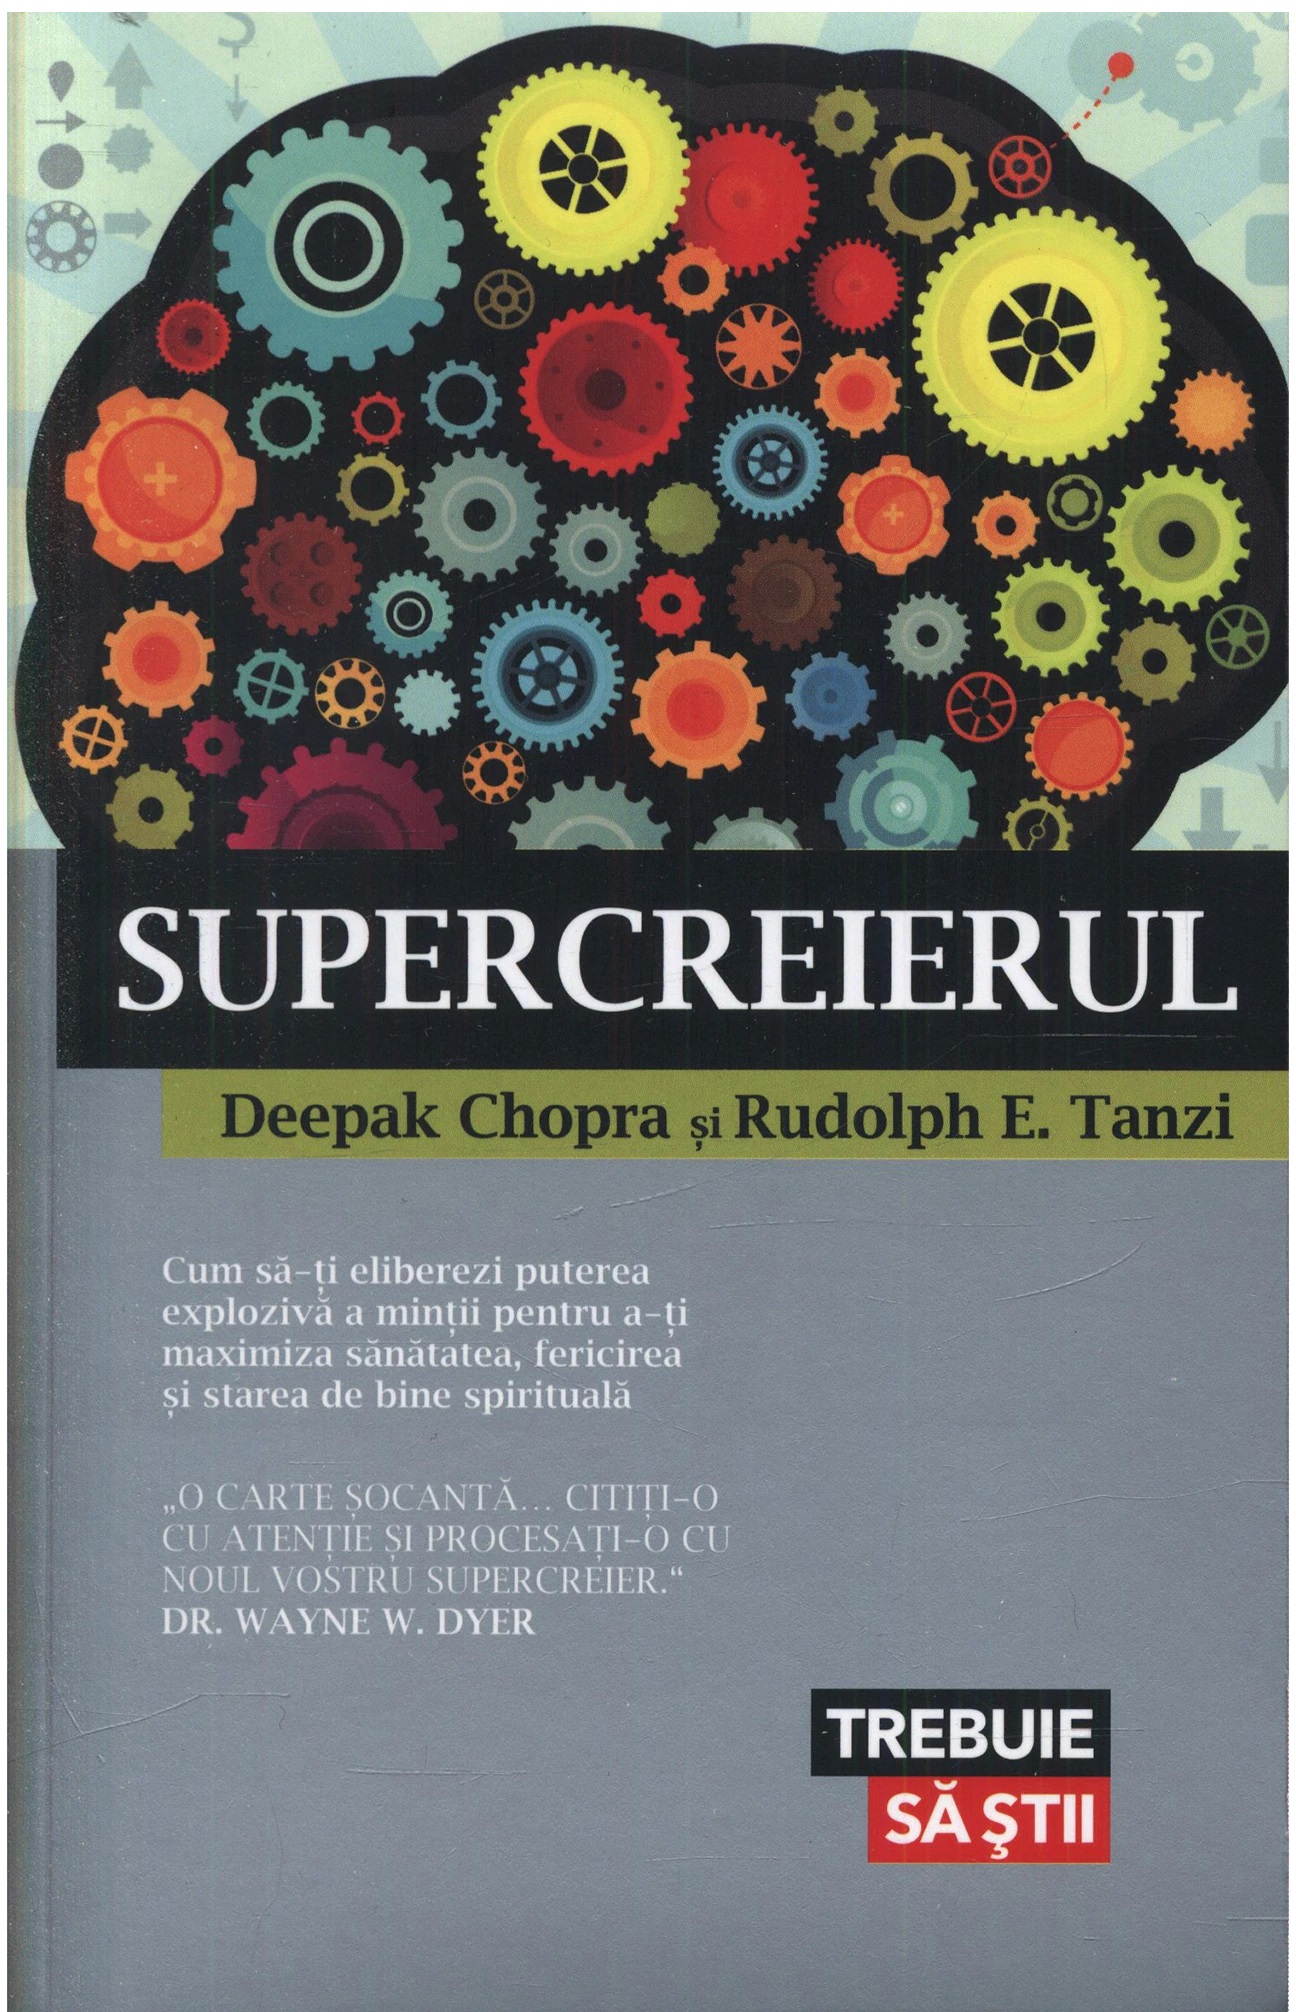 Supercreierul | Deepak Chopra, Rudolph E. Tanzi carturesti.ro poza bestsellers.ro